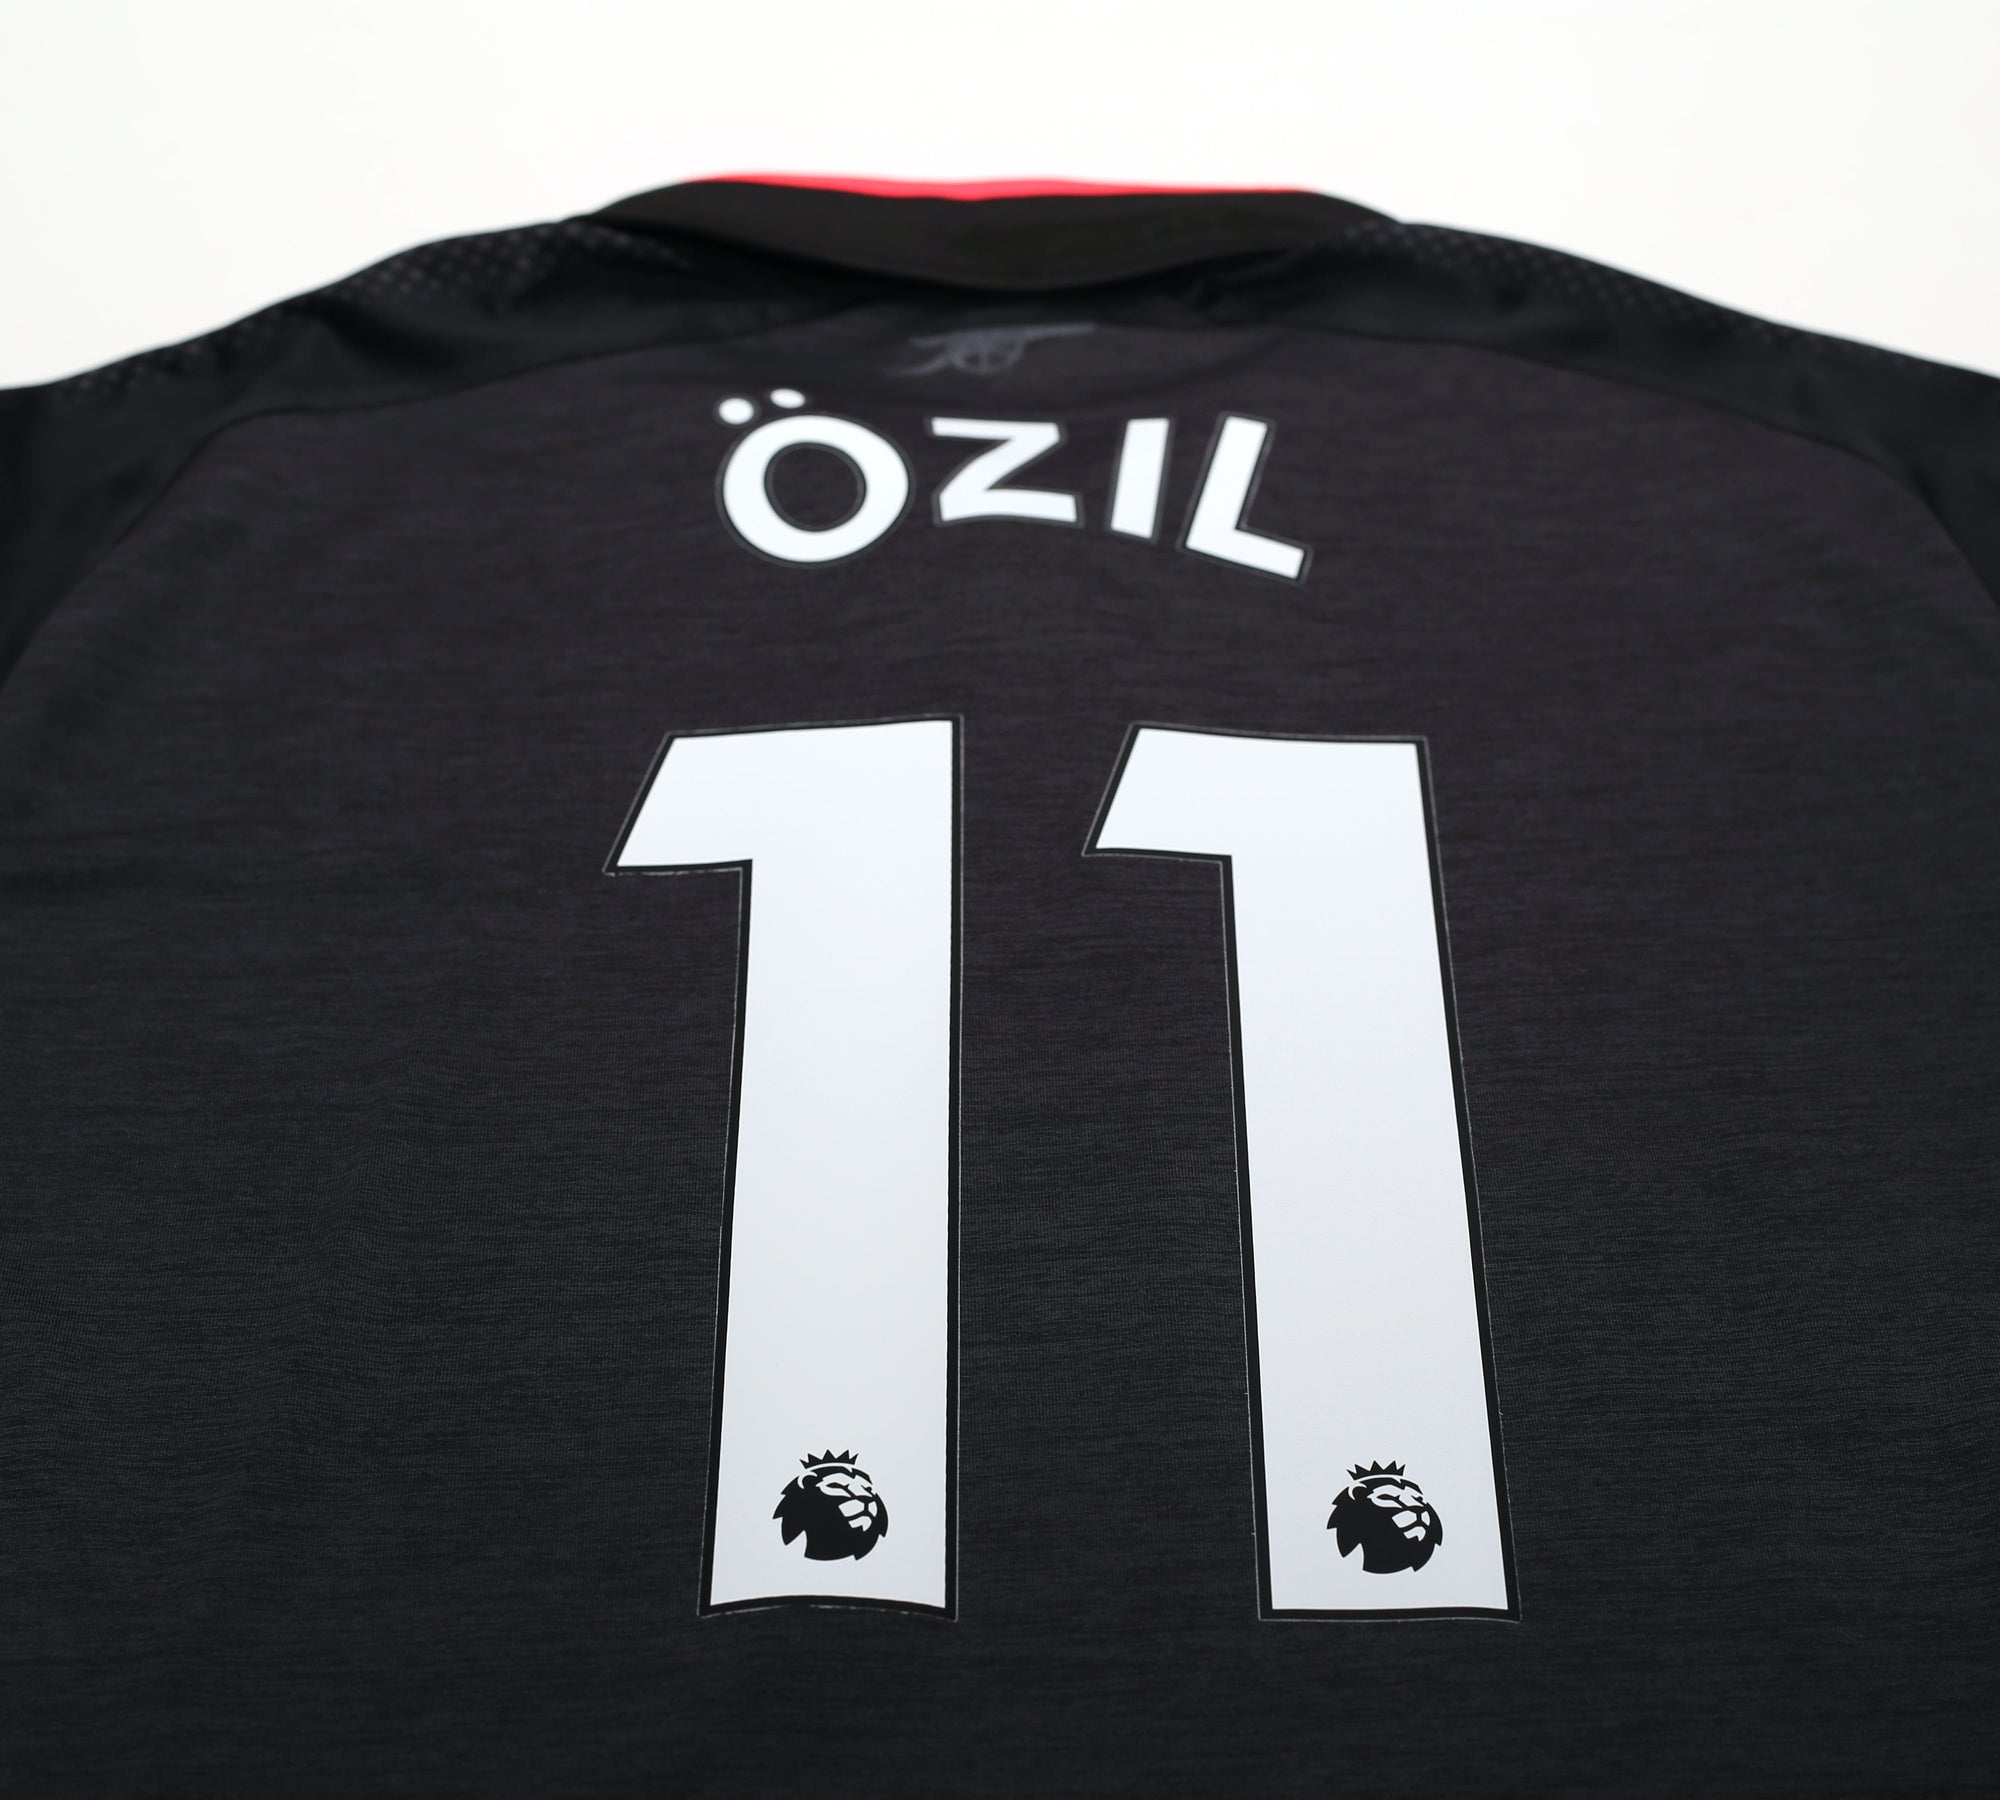 2017/18 OZIL #11 Arsenal Vintage PUMA Third Football Shirt (L)